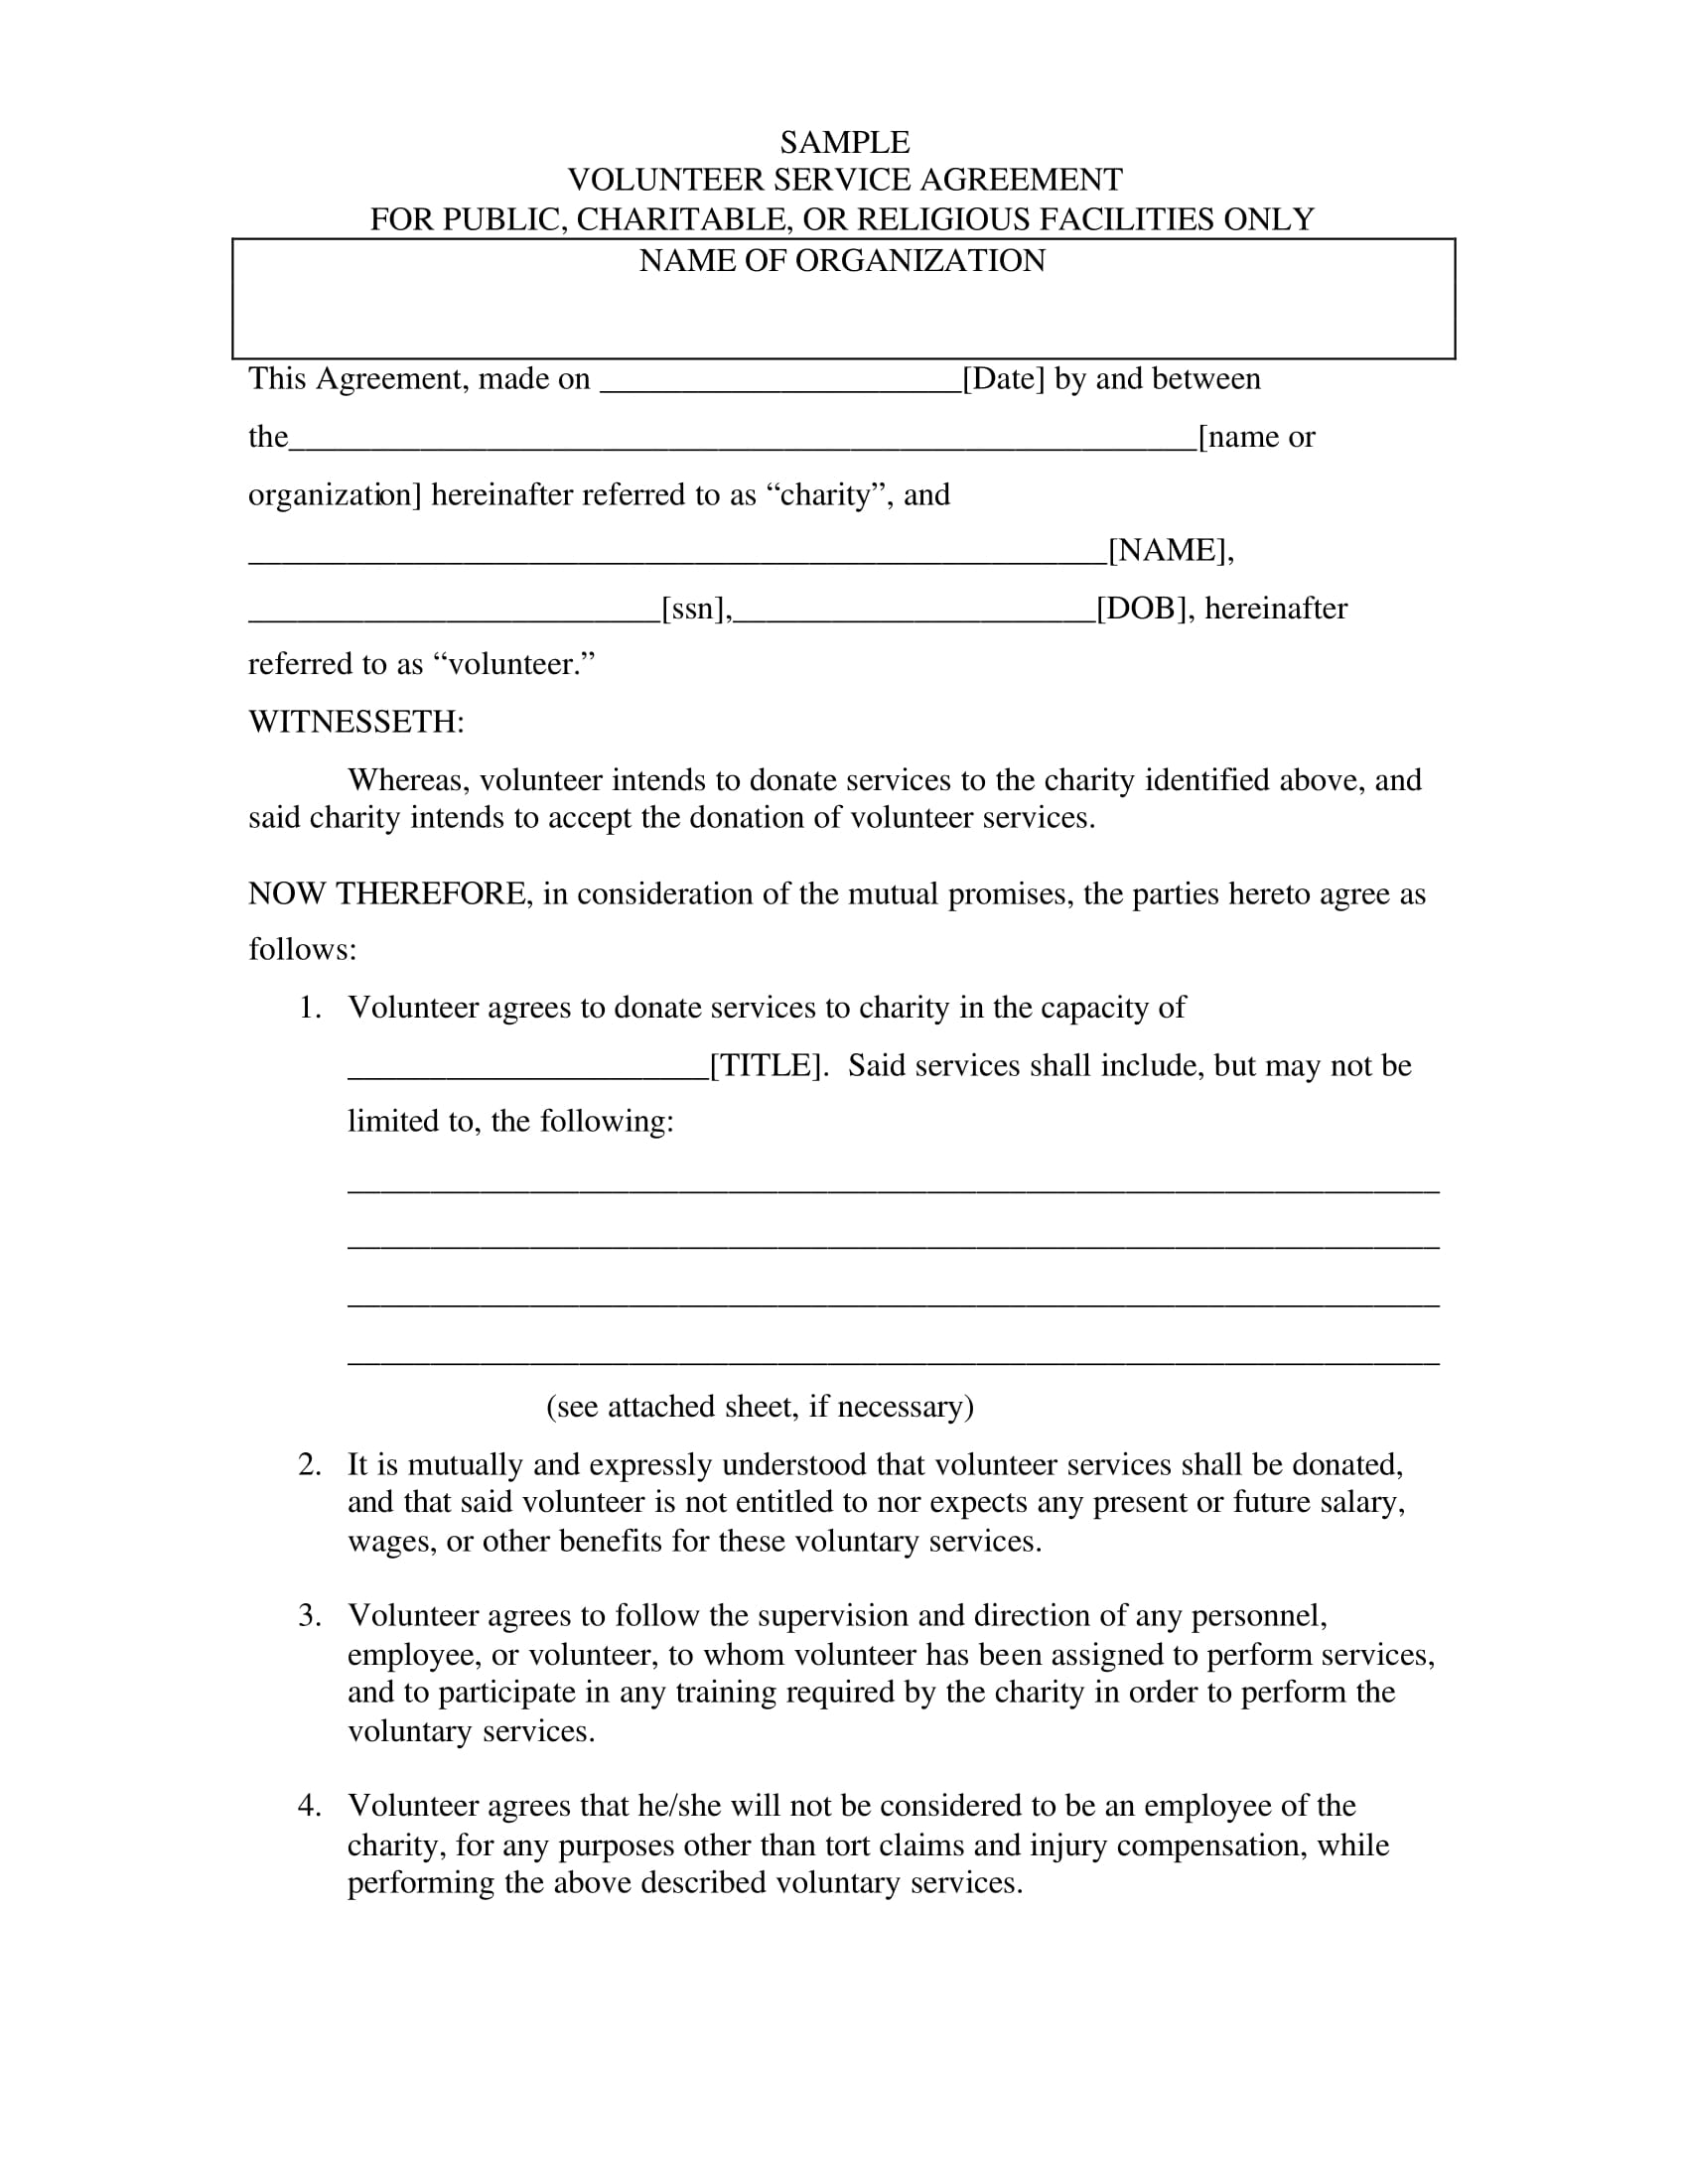 volunteer service agreement example